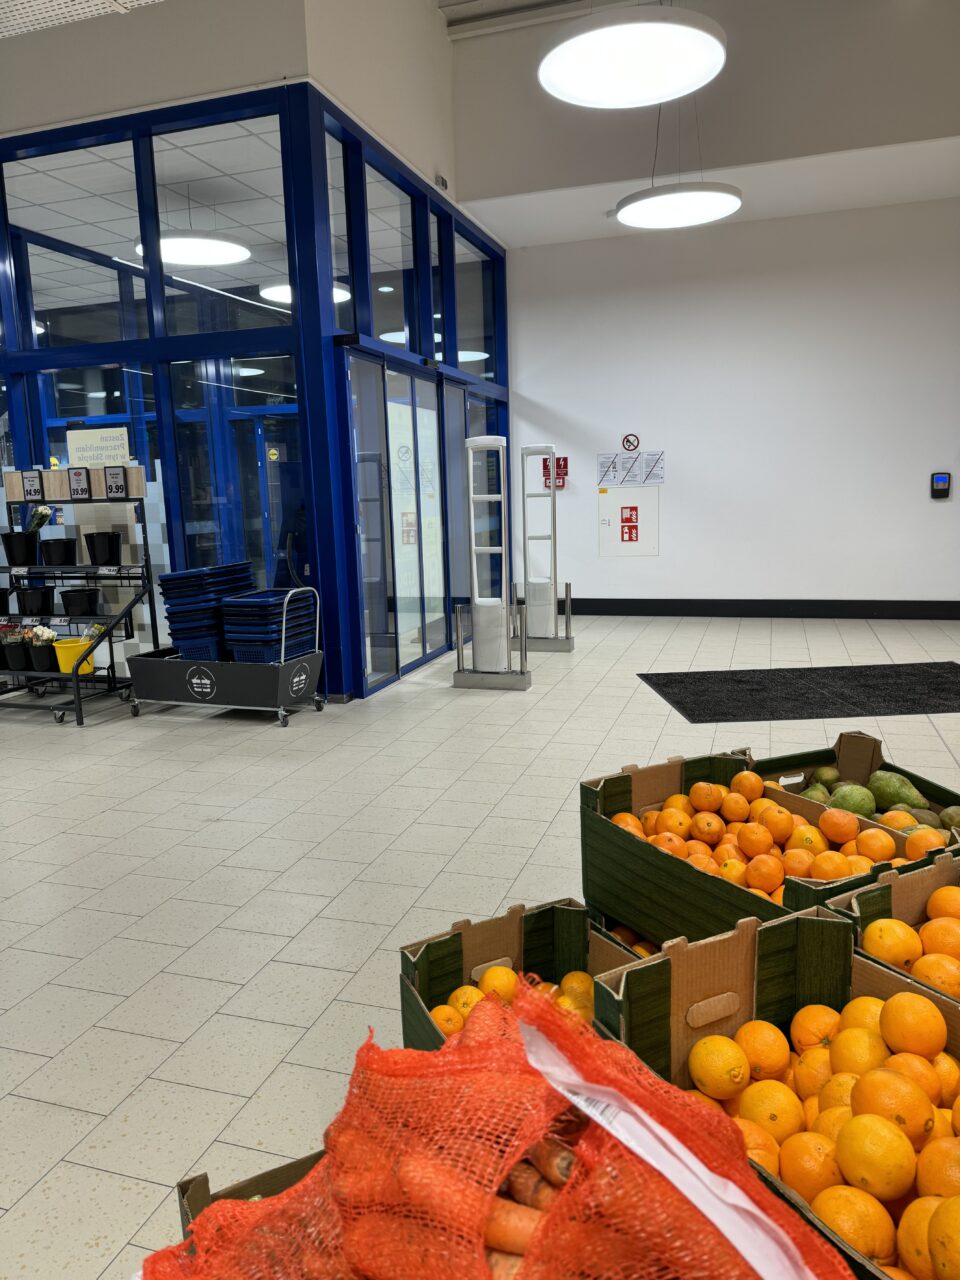 Entrada de um supermercado Lidl com caixas de laranjas e cenouras frescas expostas, carrinhos de compras visíveis, portas azuis e cartazes com instruções de segurança.